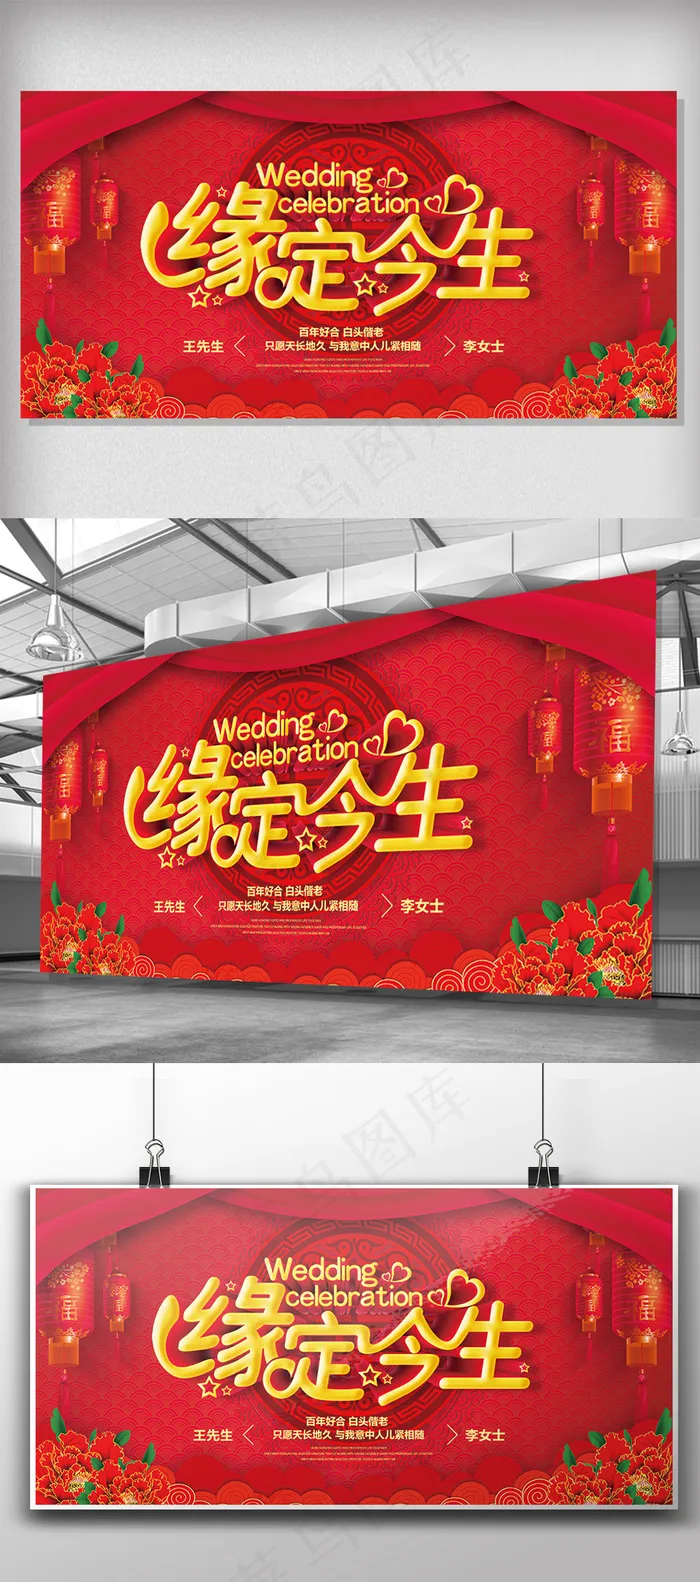 红色中式婚礼婚庆婚啦台舞台背景设计